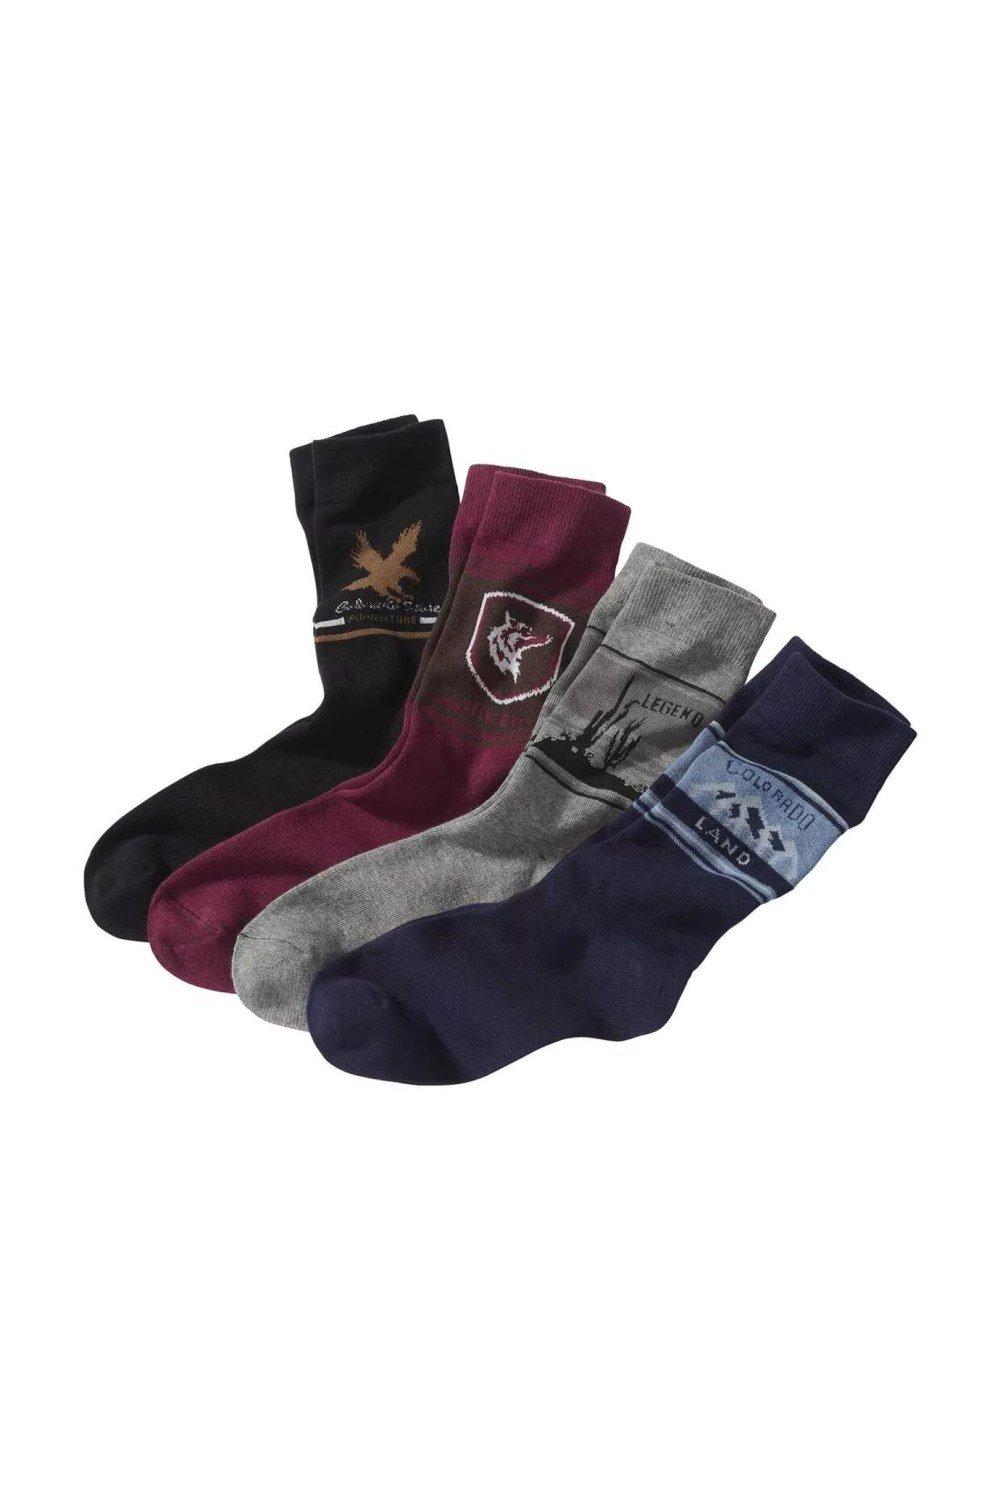 Patterned Socks (Pack of 4)